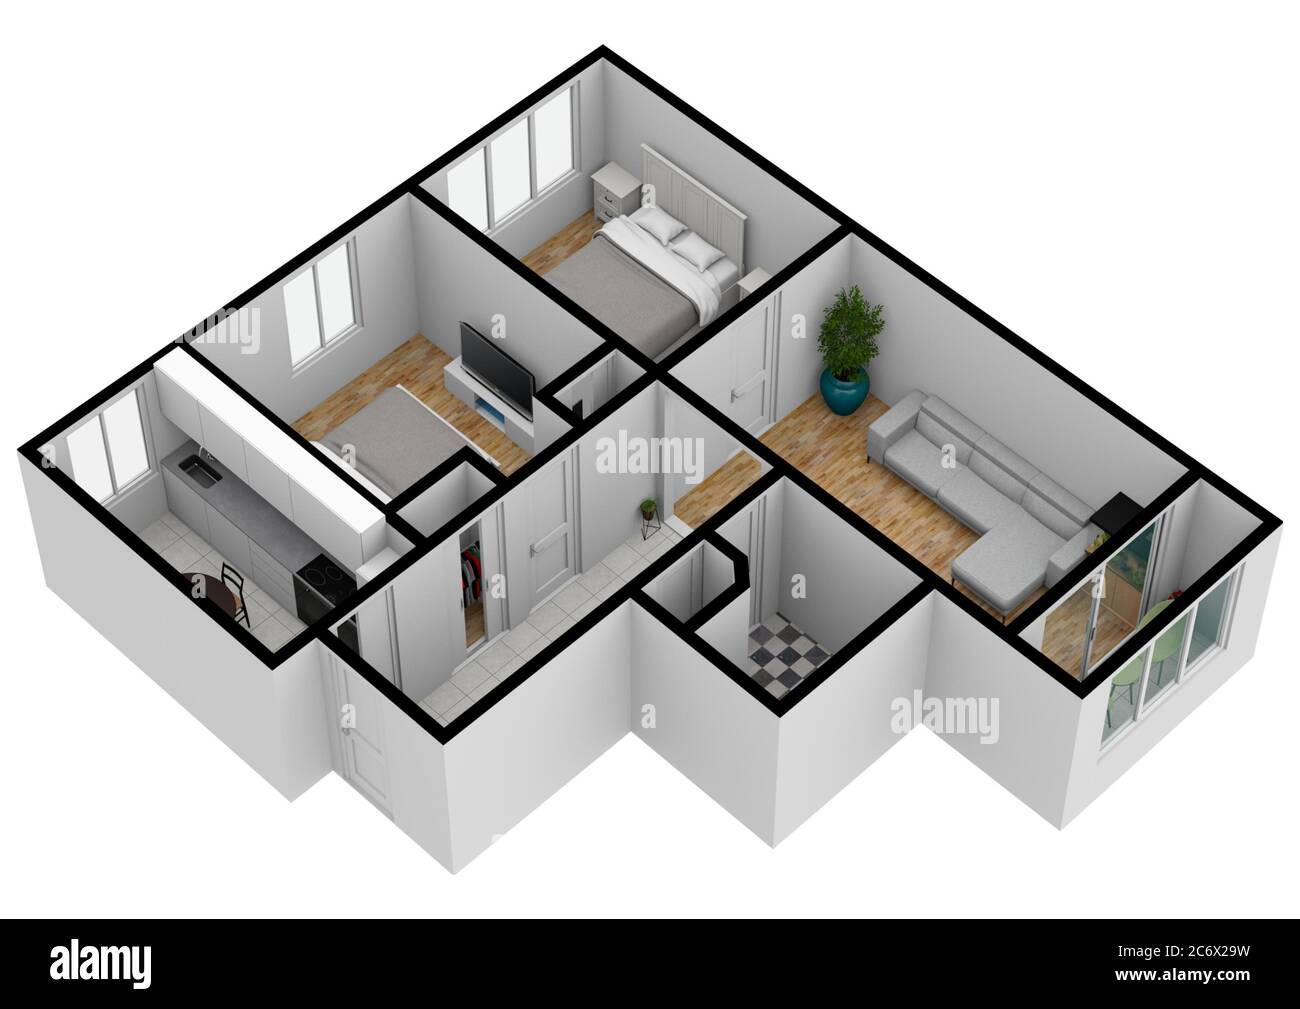 3d house blueprints and plans